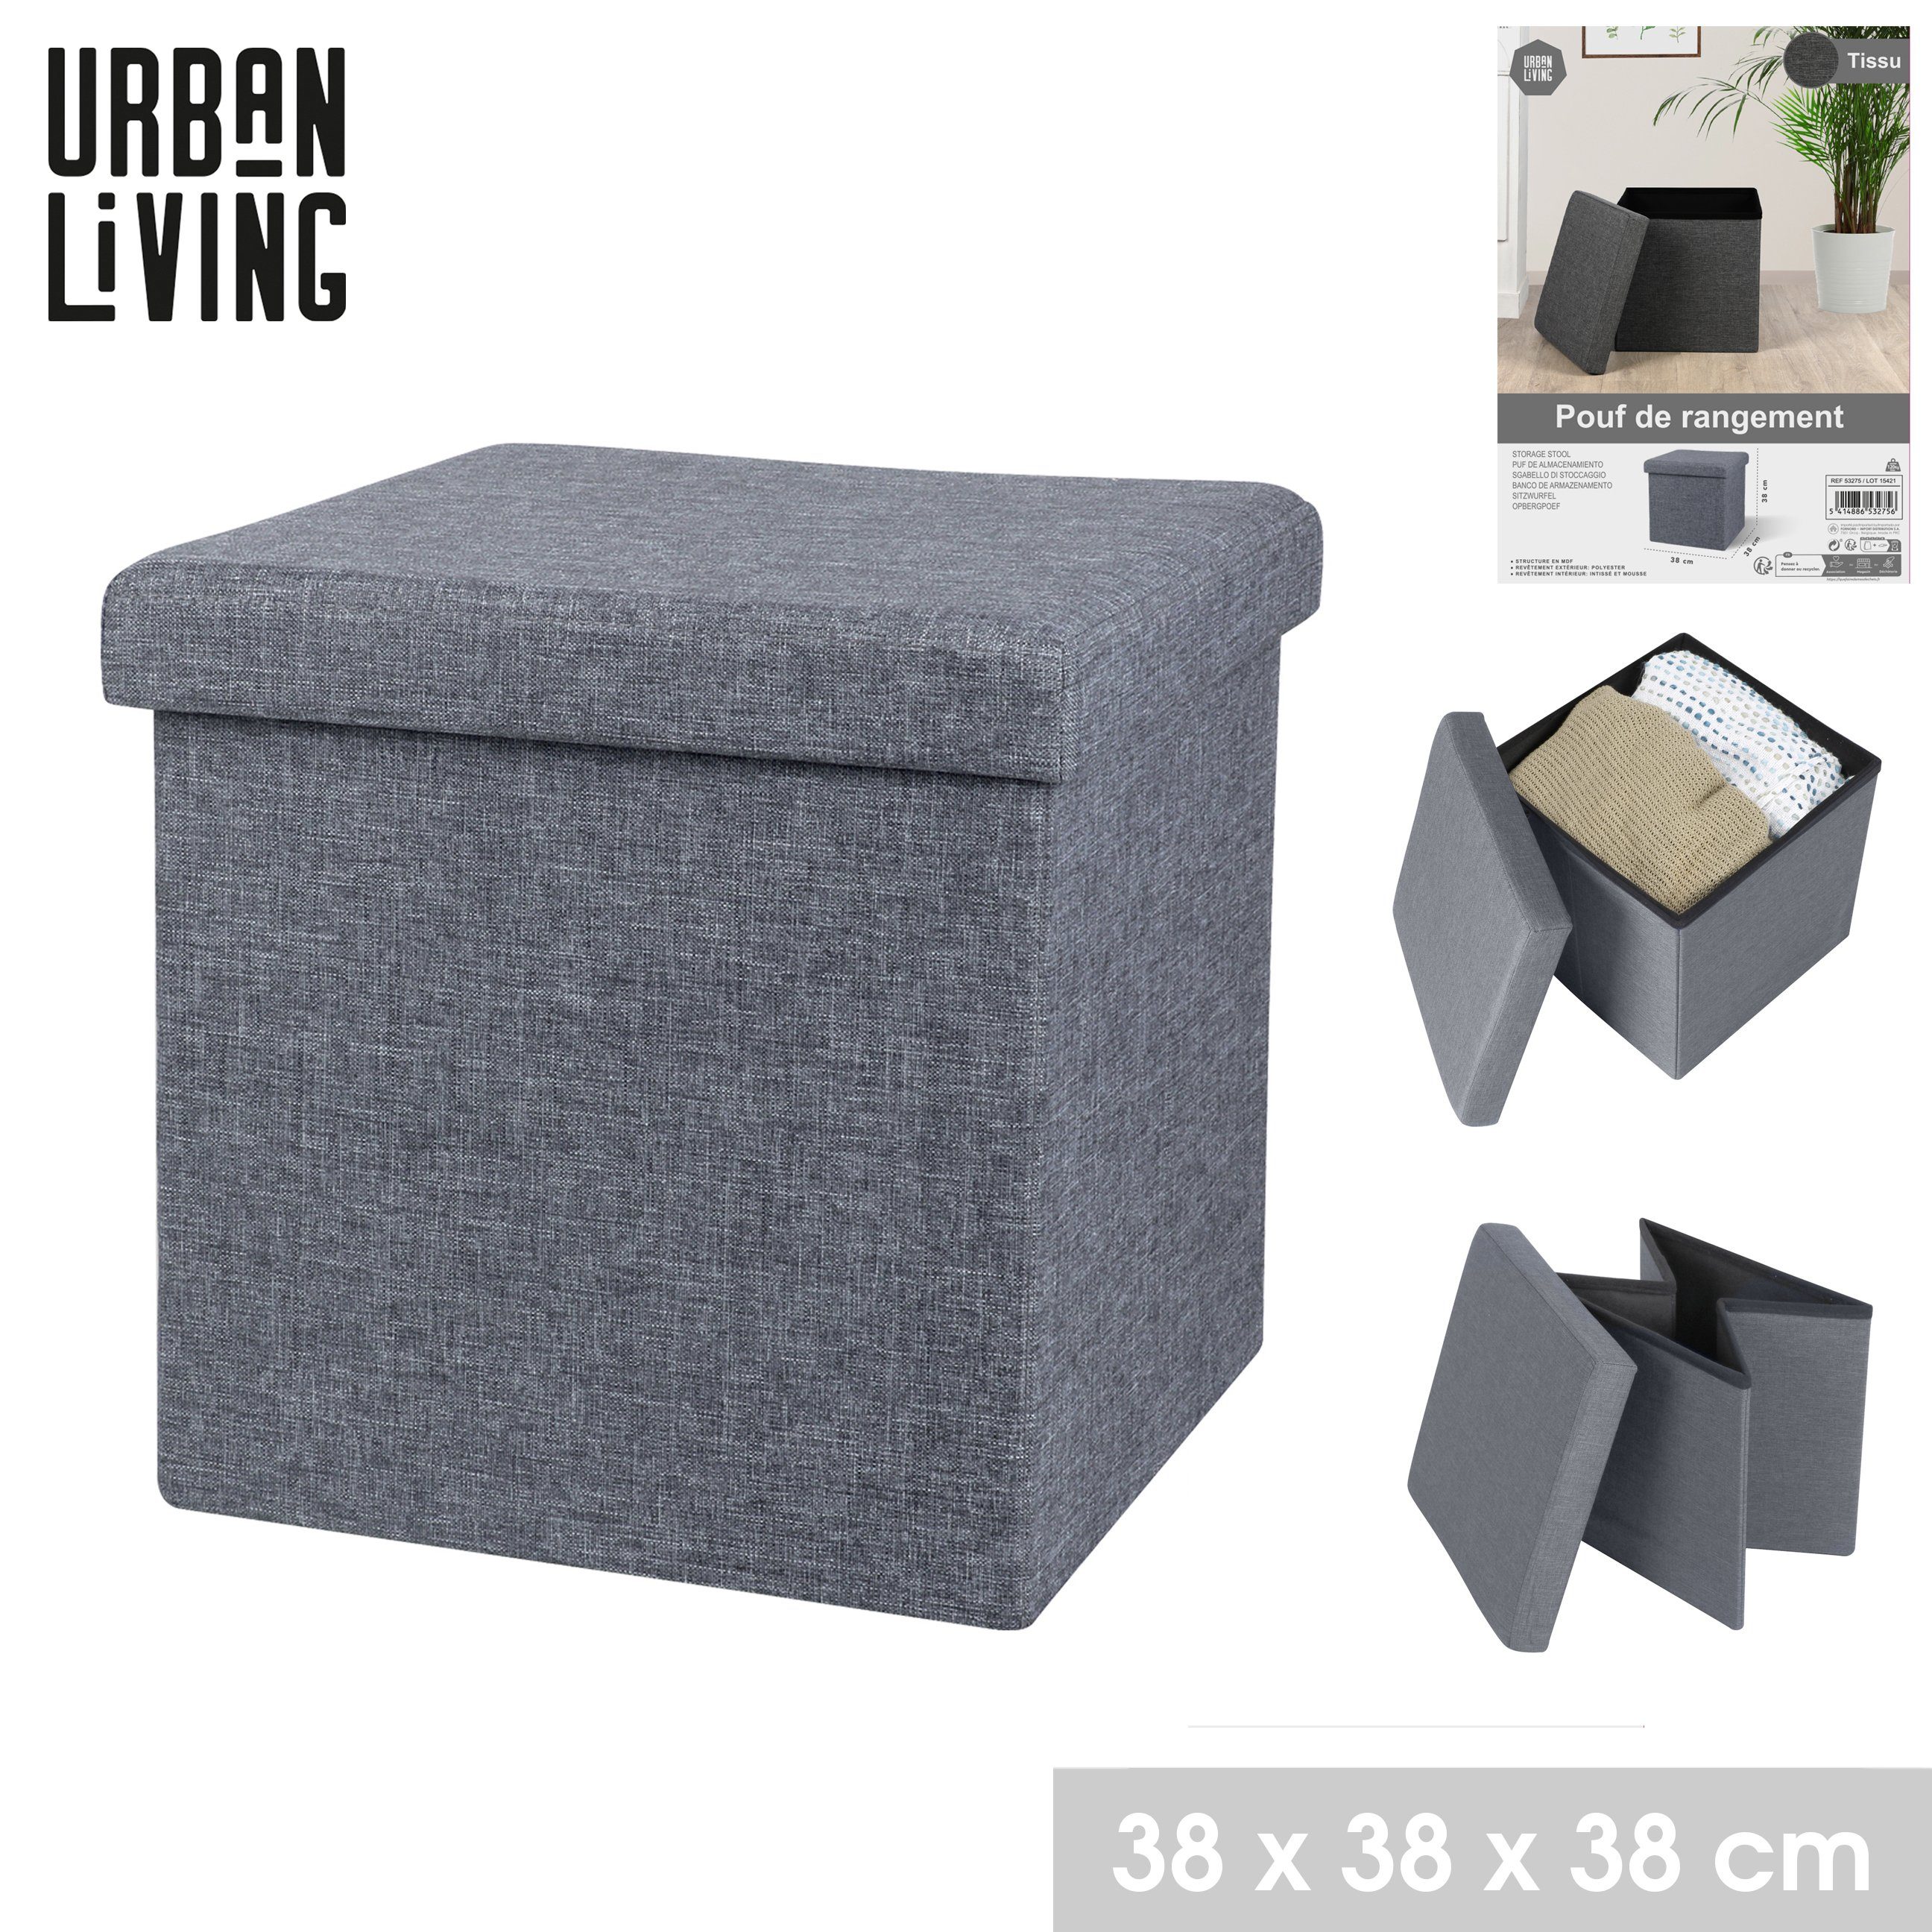 Tissu, Sitzwürfel Living Aufbewahrungsbox hoher mit Stauraumfach Grau Sitzwürfel Sitzhocker Urban Sitzkomfort